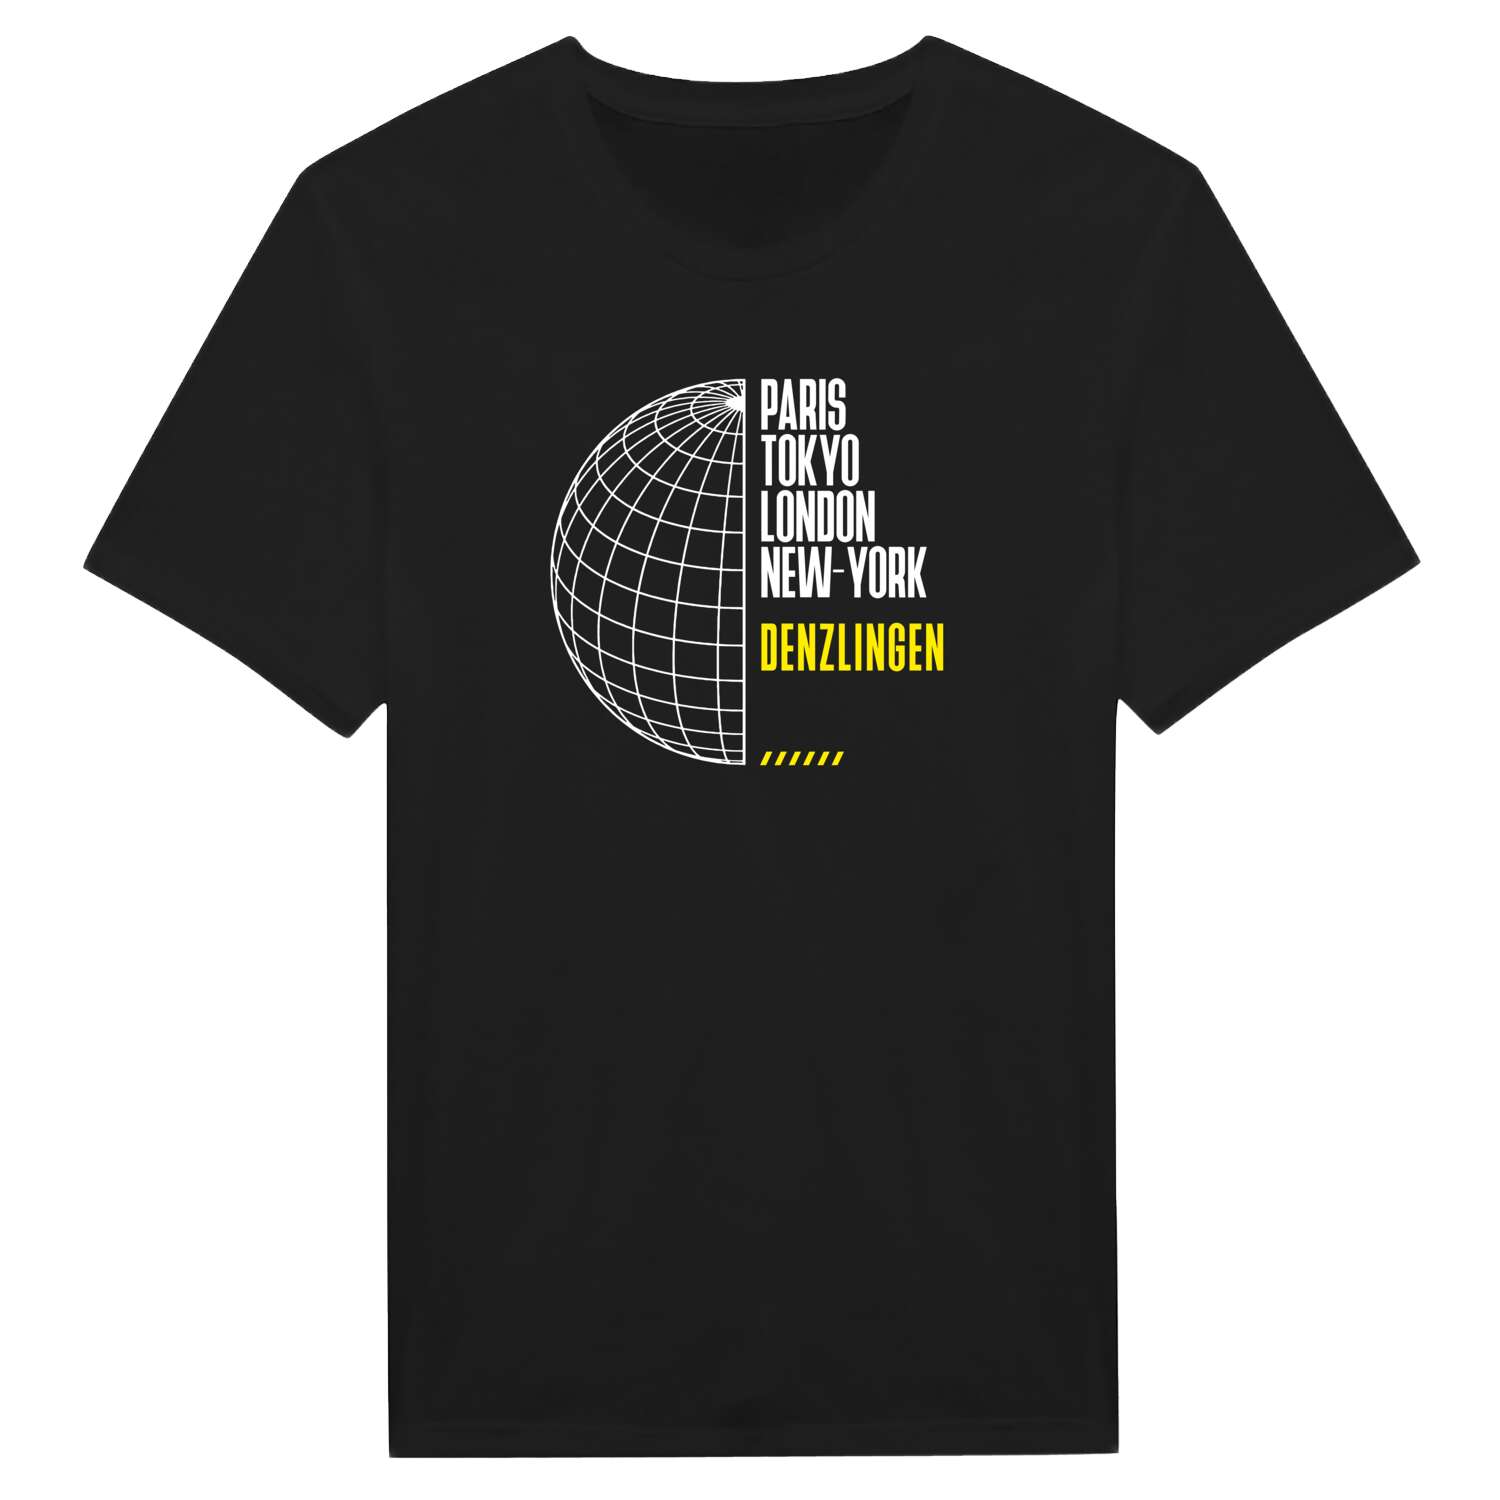 Denzlingen T-Shirt »Paris Tokyo London«